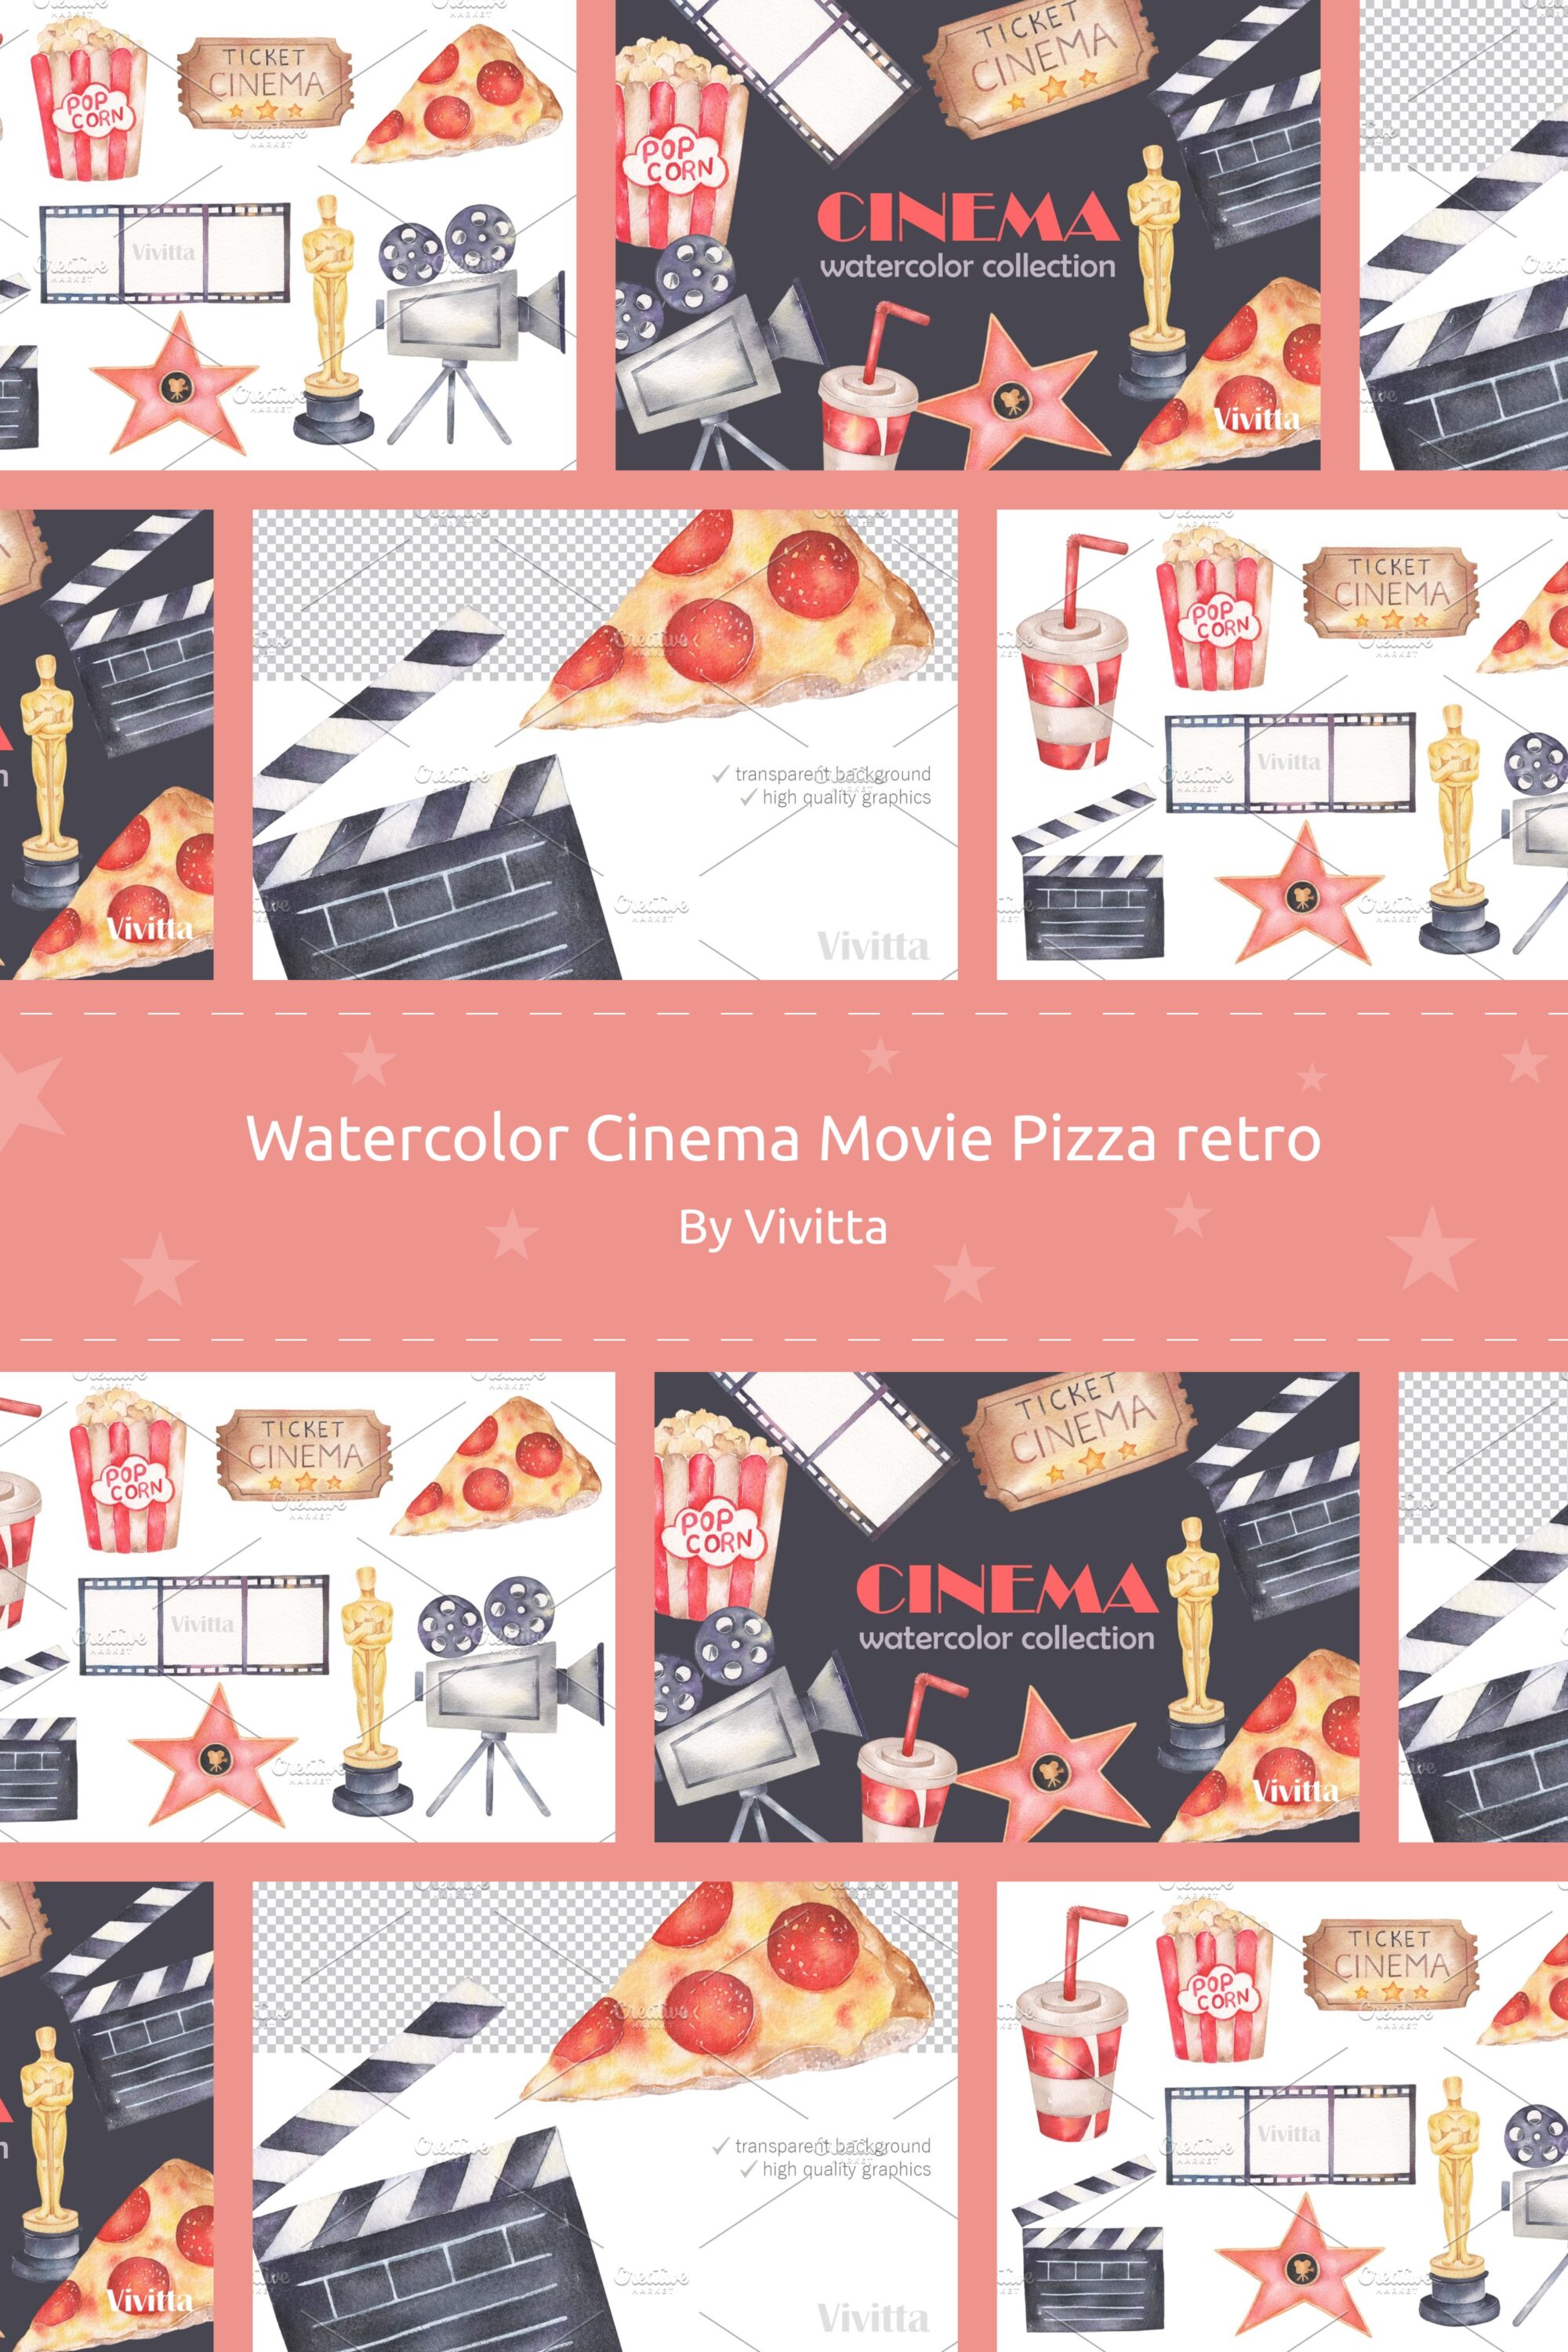 watercolor cinema movie pizza retro 03